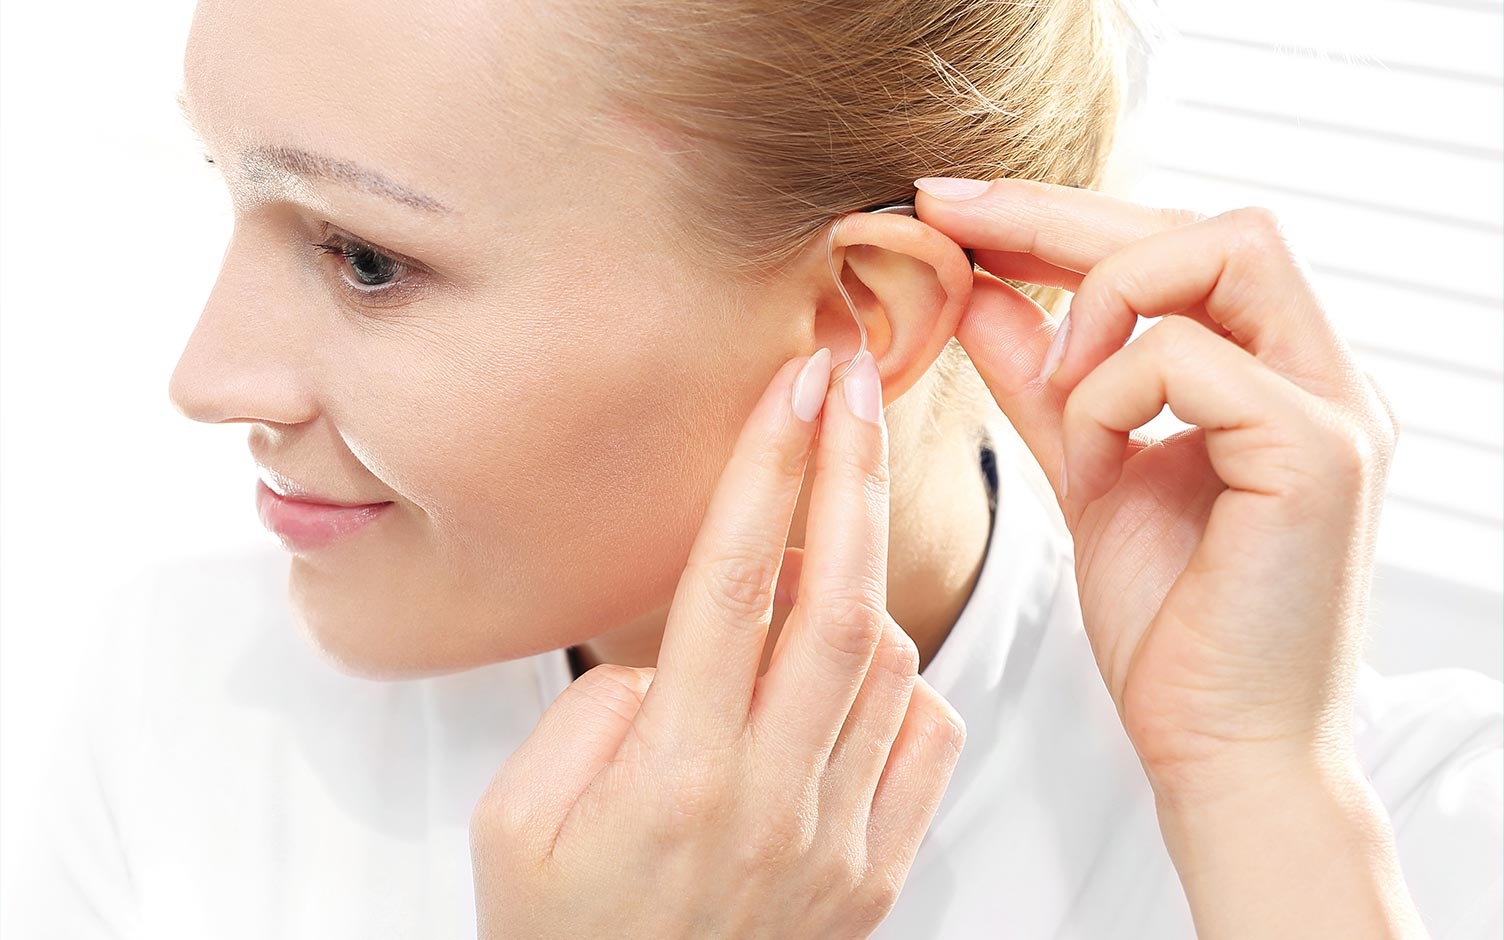 Volver a oír: La evolución de las prótesis auditivas